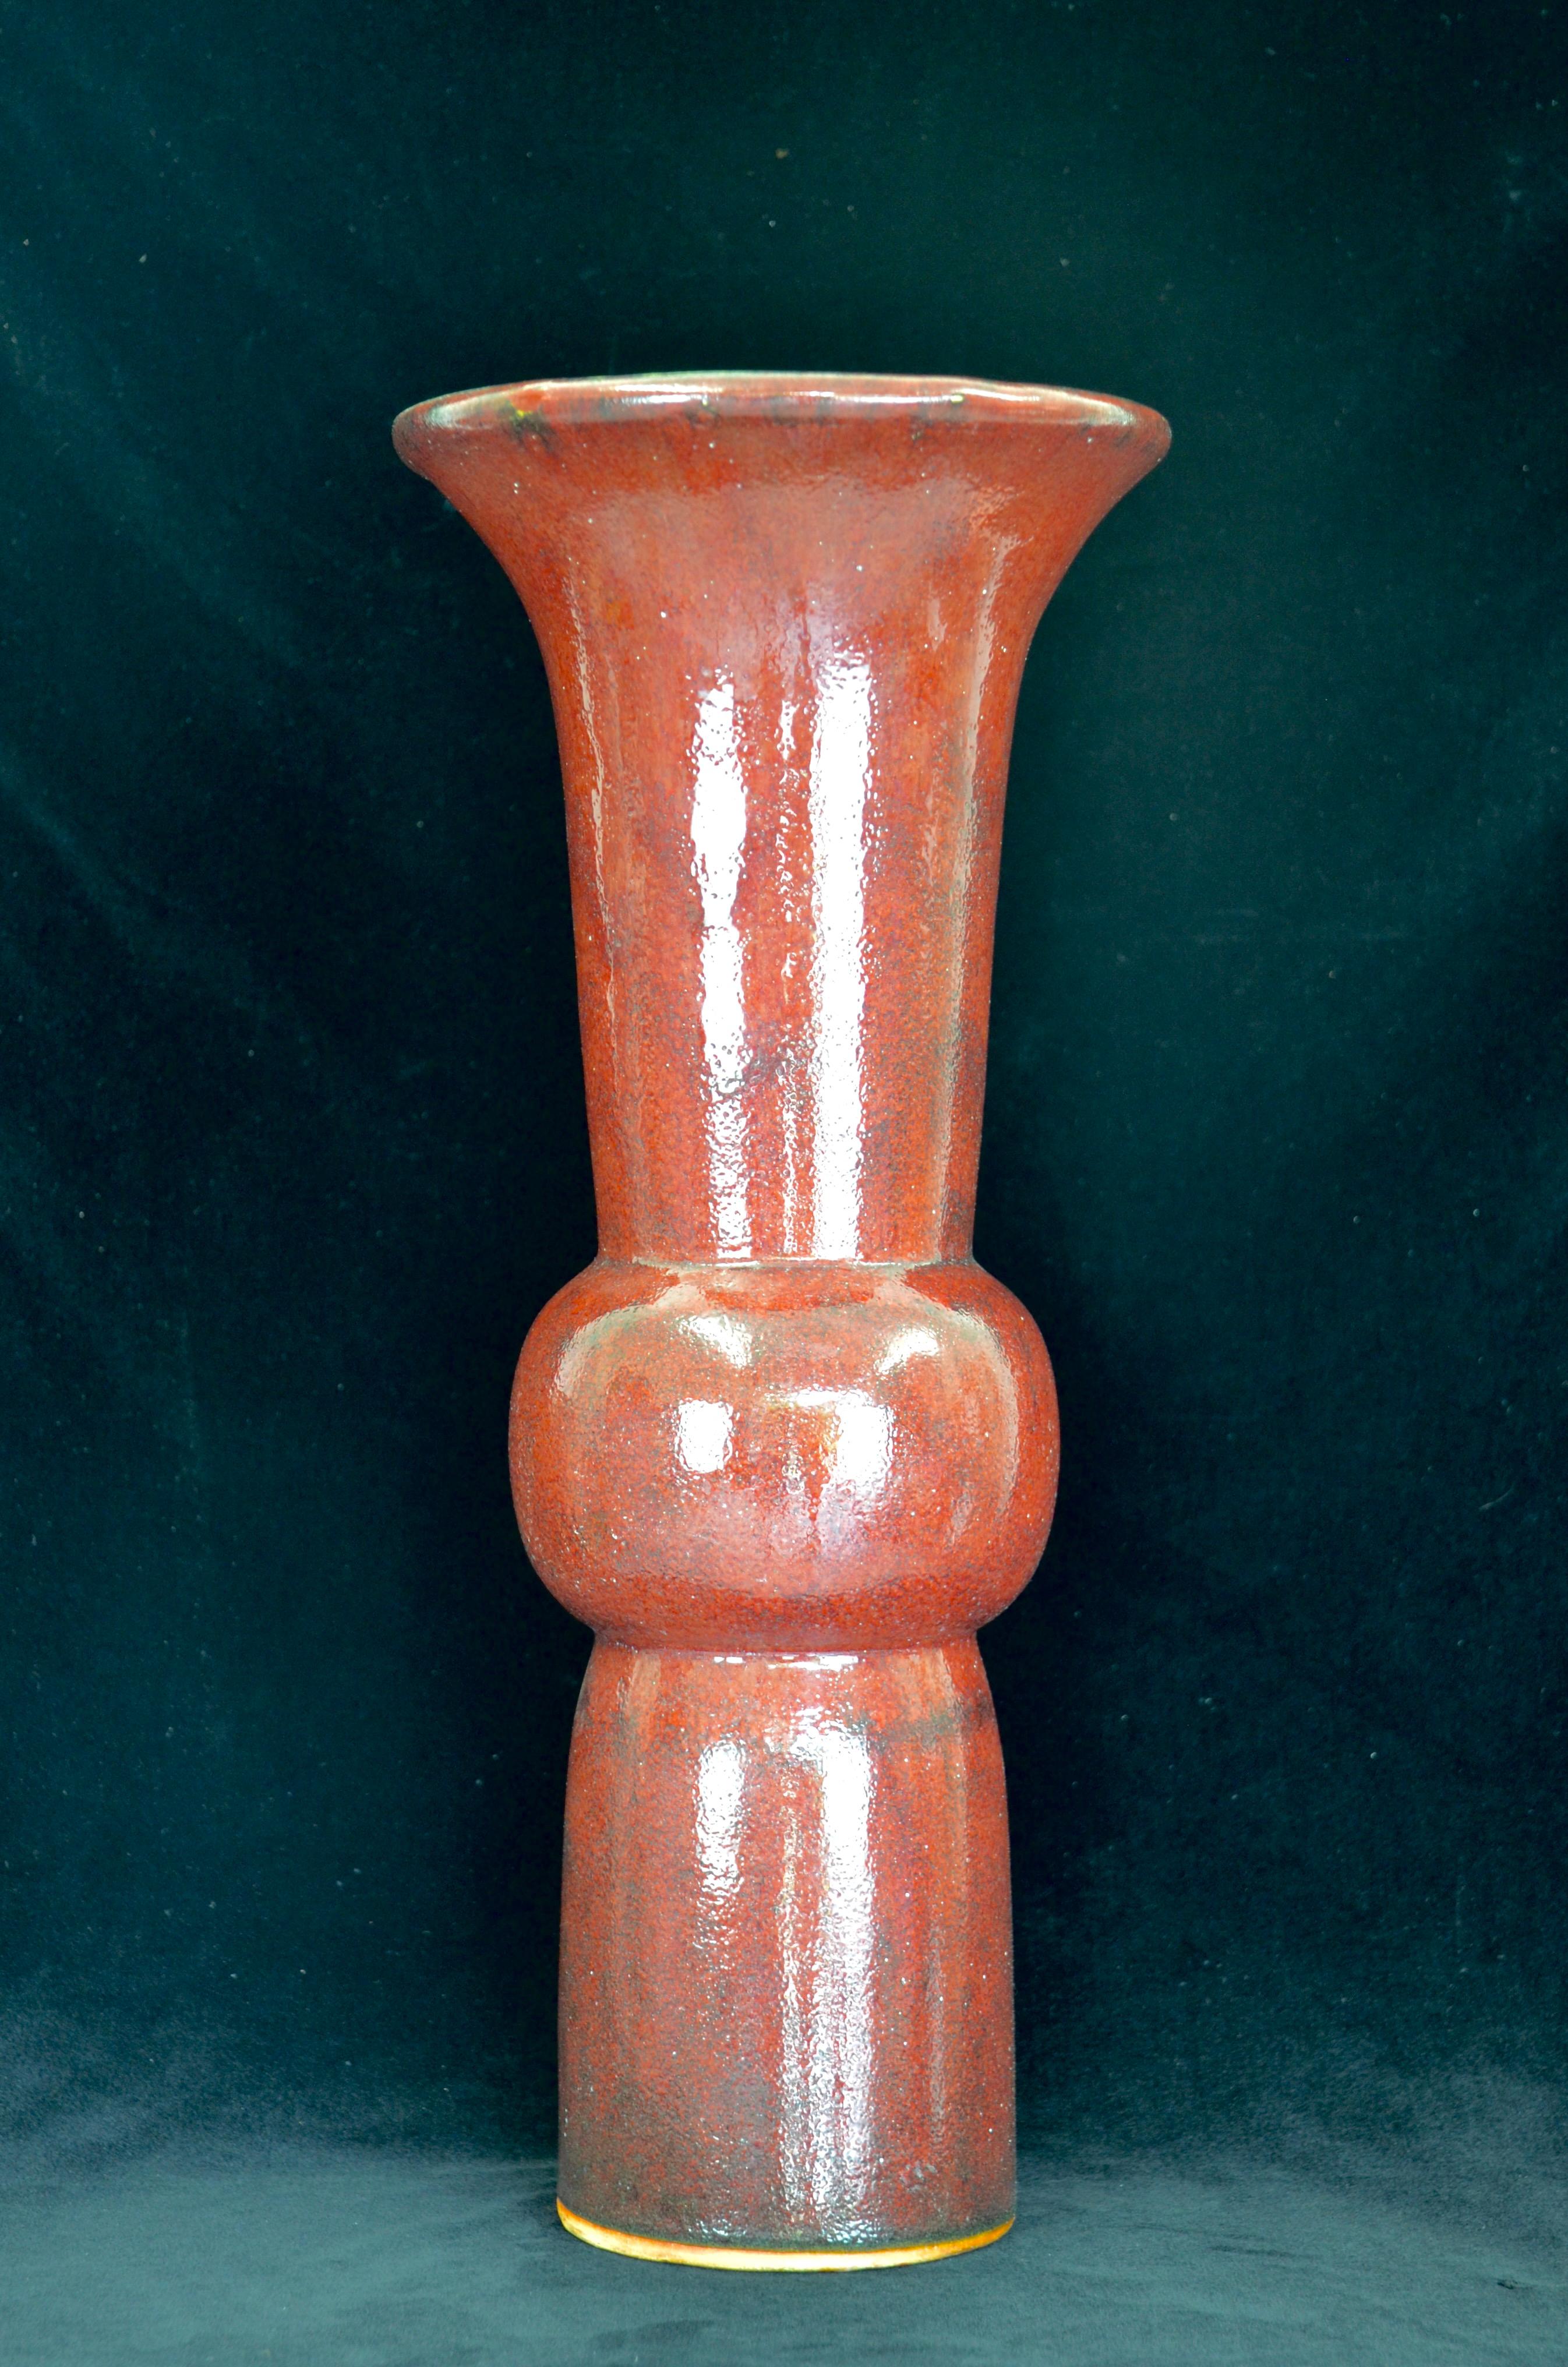 Vase chinois Sang de Beouf Gu Form du début du 20e siècle. Le terme 